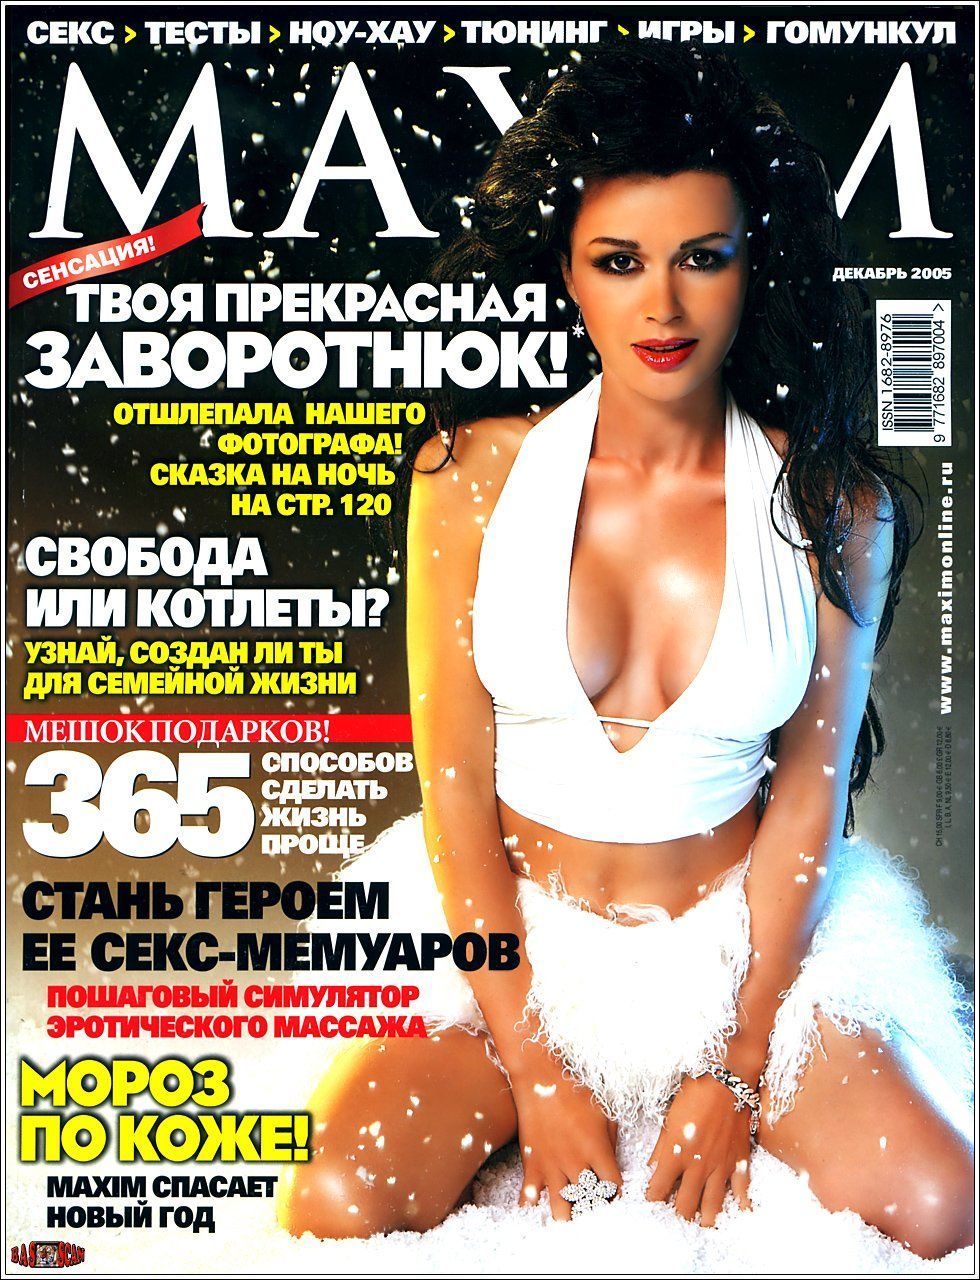 Анастасия Заворотнюк на обложке «MAXIM» 2005 год